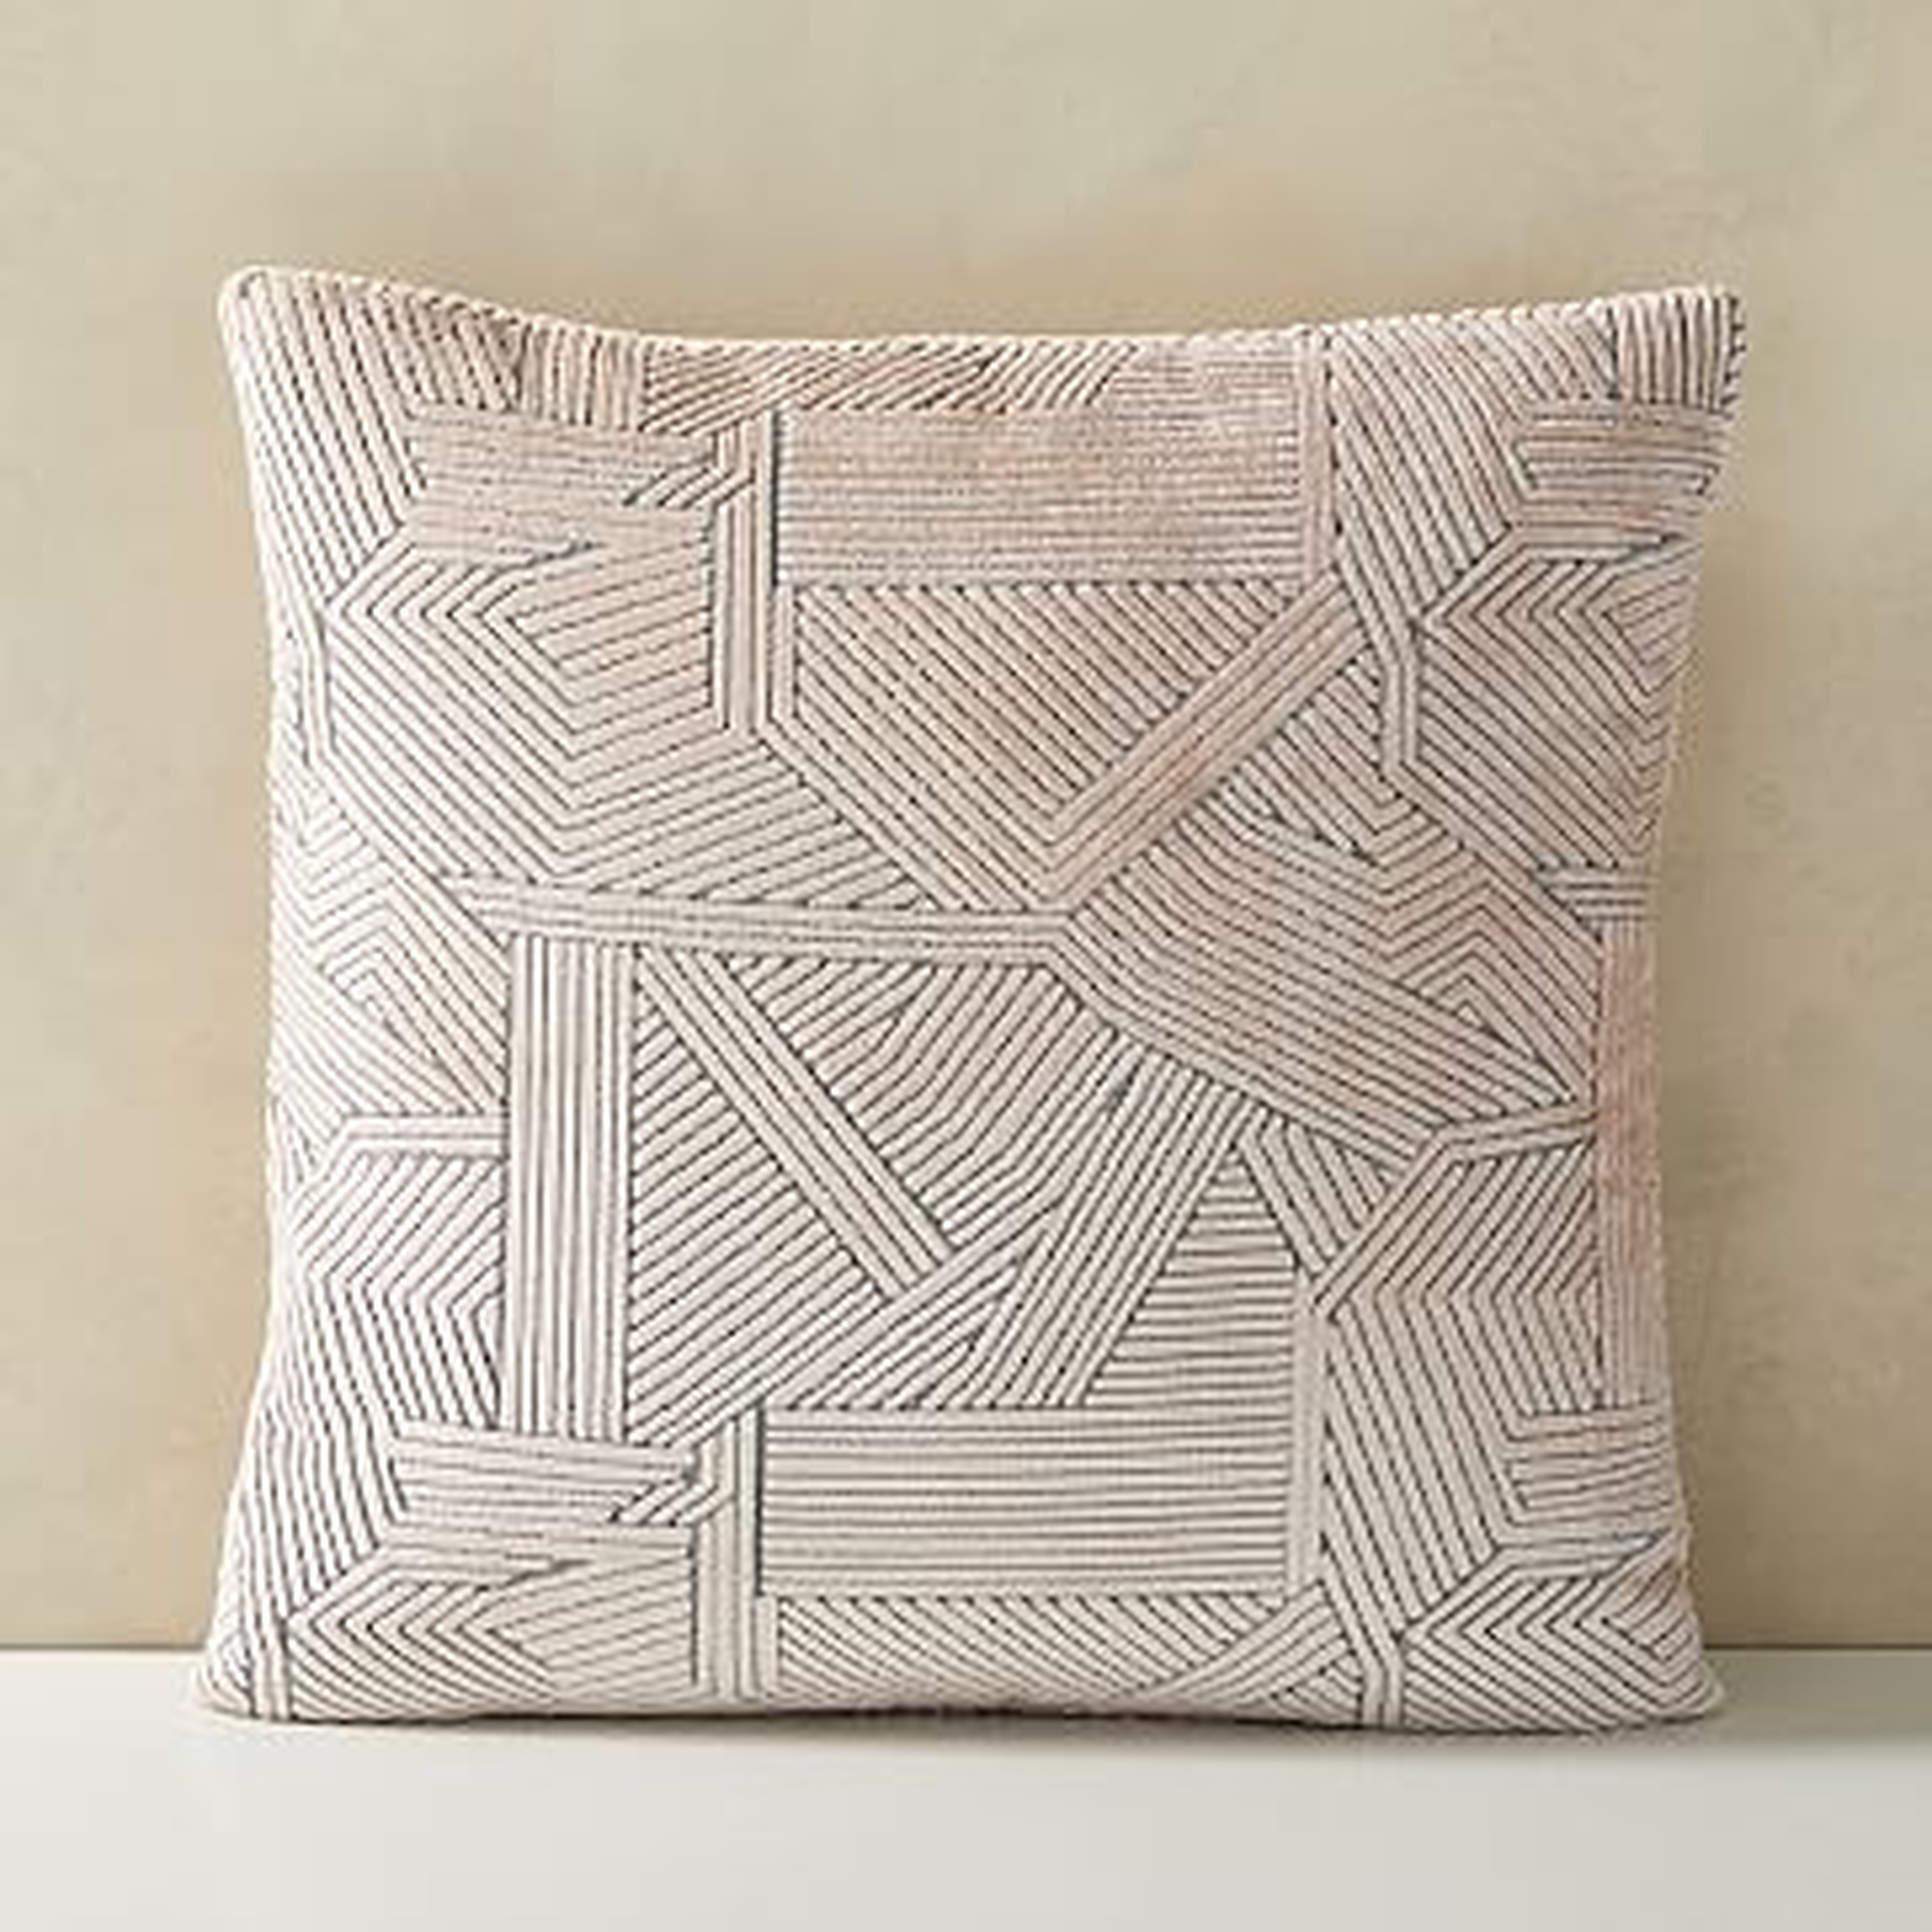 Linear Cut Velvet Pillow Cover, 20"x20", Misty Rose - West Elm